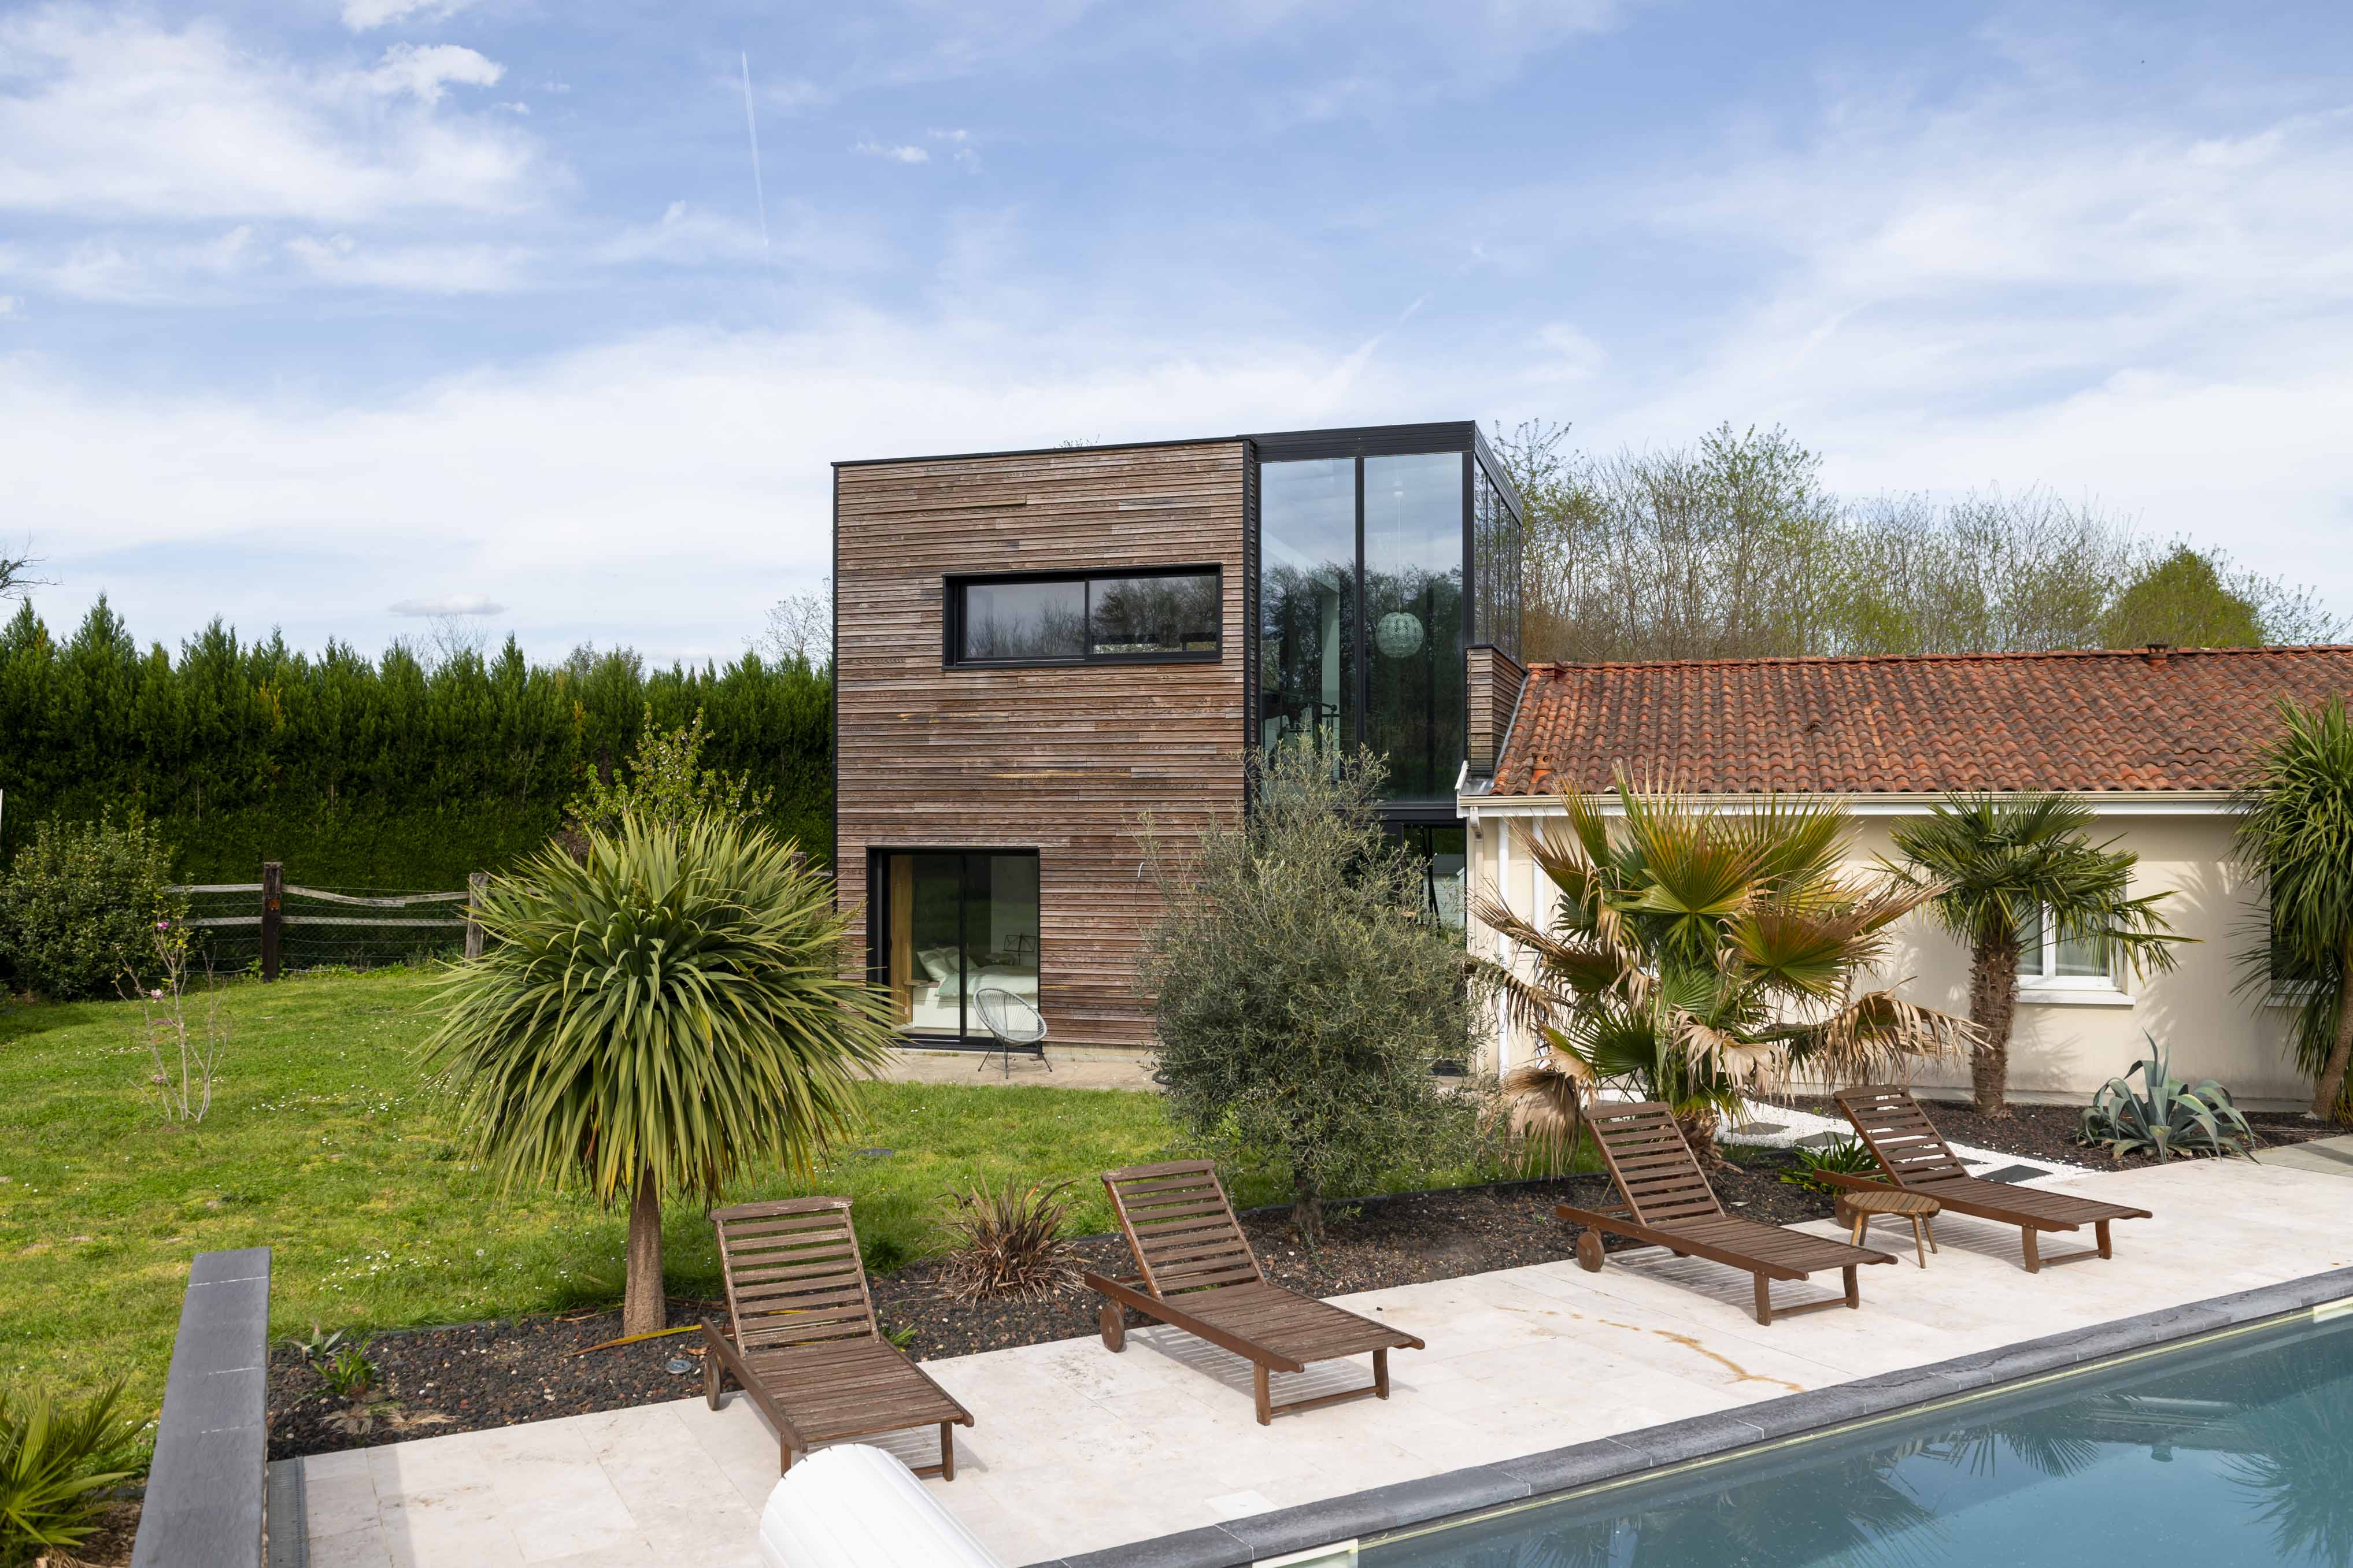 Maison en bardage bois extérieur avec piscine, lasure bois, Tollens chez julie_home40 sur Instagram